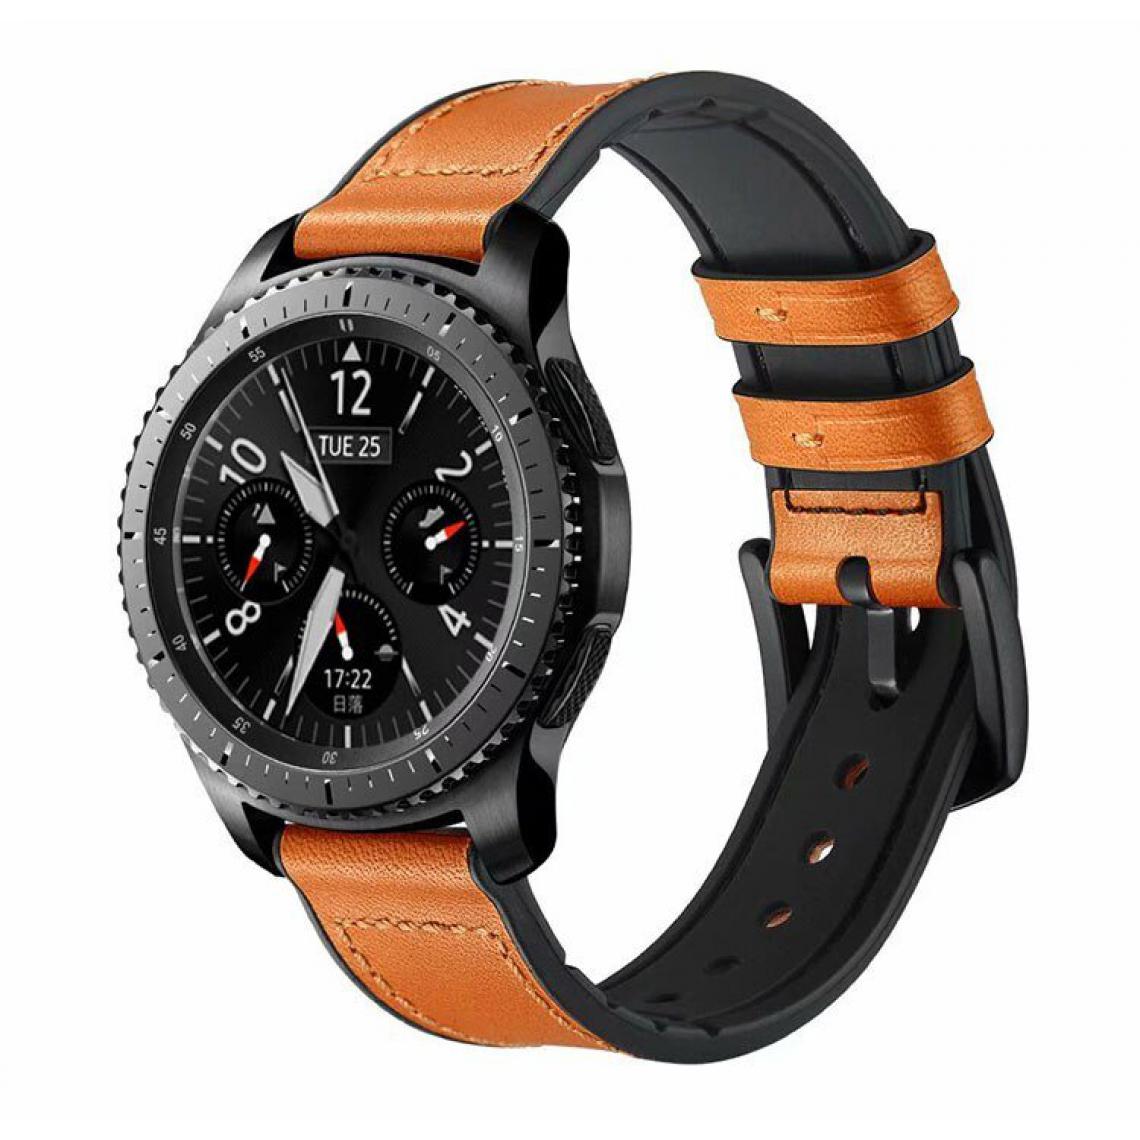 Phonecare - Bracelet Premium SiliconLeather pour Samsung Galaxy Watch 46mm - marron / Noir - Autres accessoires smartphone